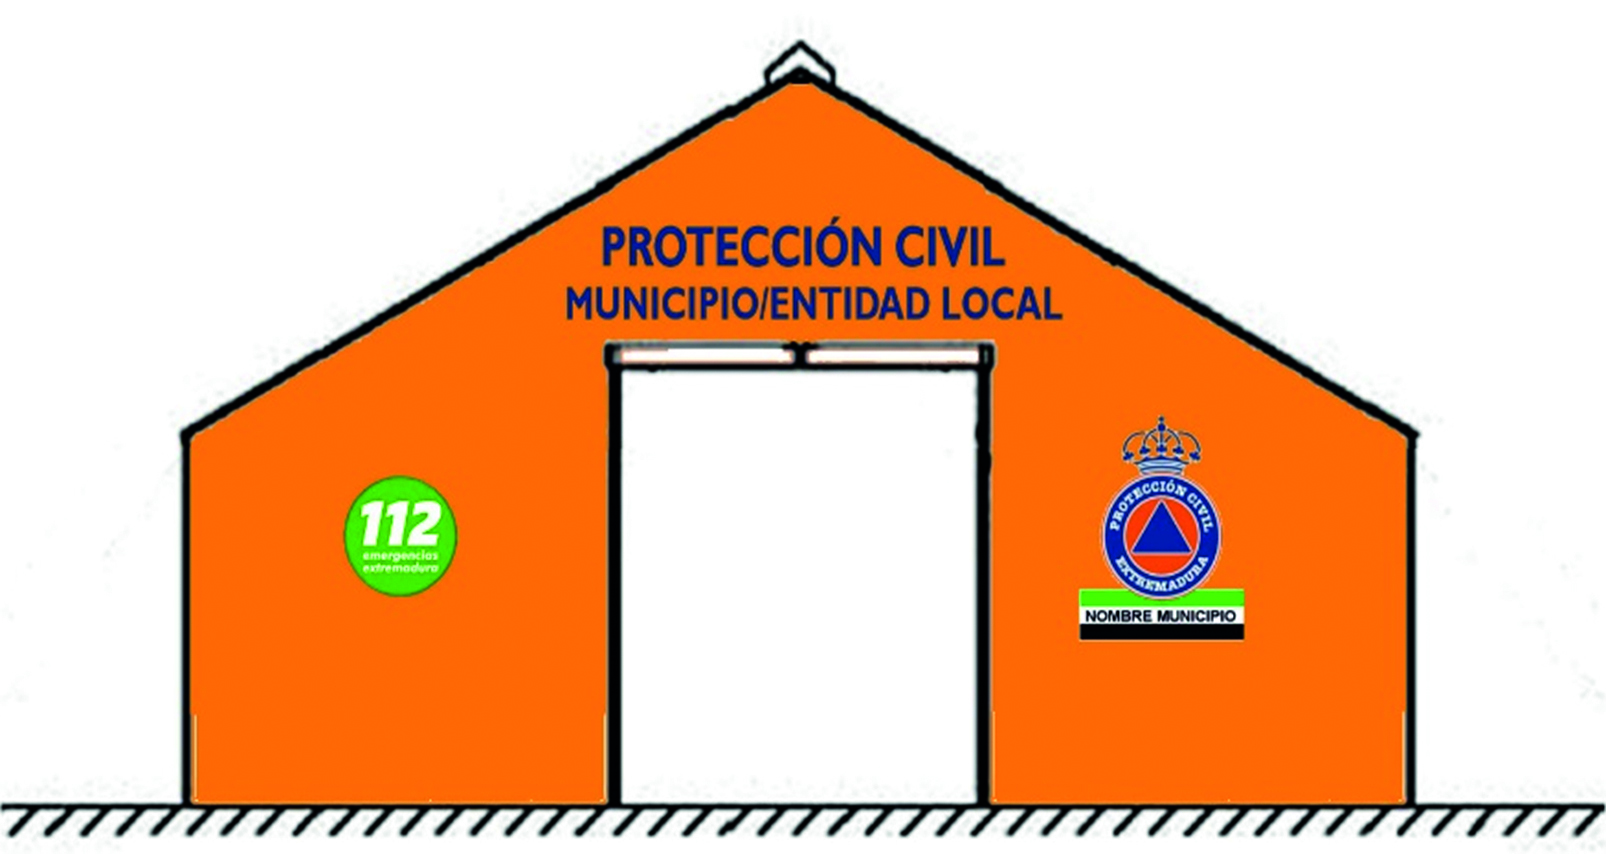 INSTALACIONES DE PROTECCION CIVIL